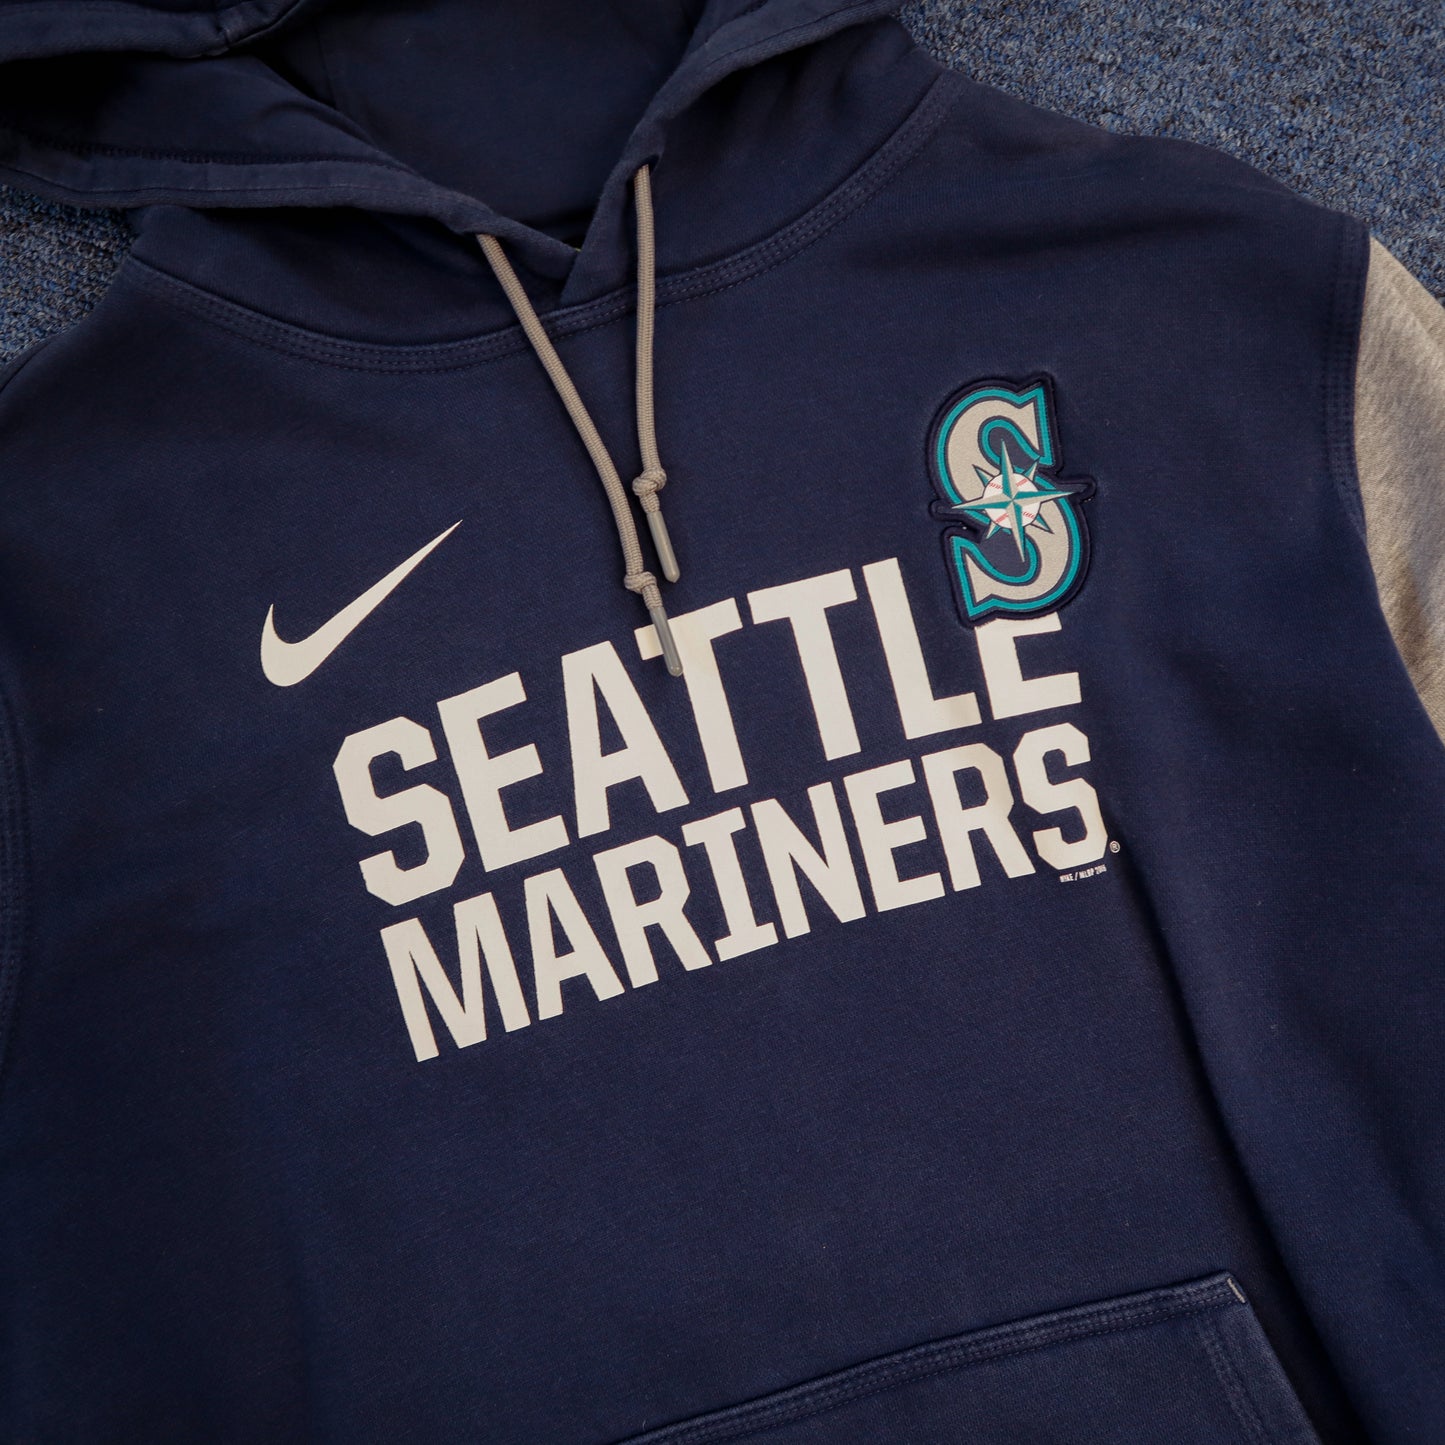 Nike NBL Seattle Marines Hoodie